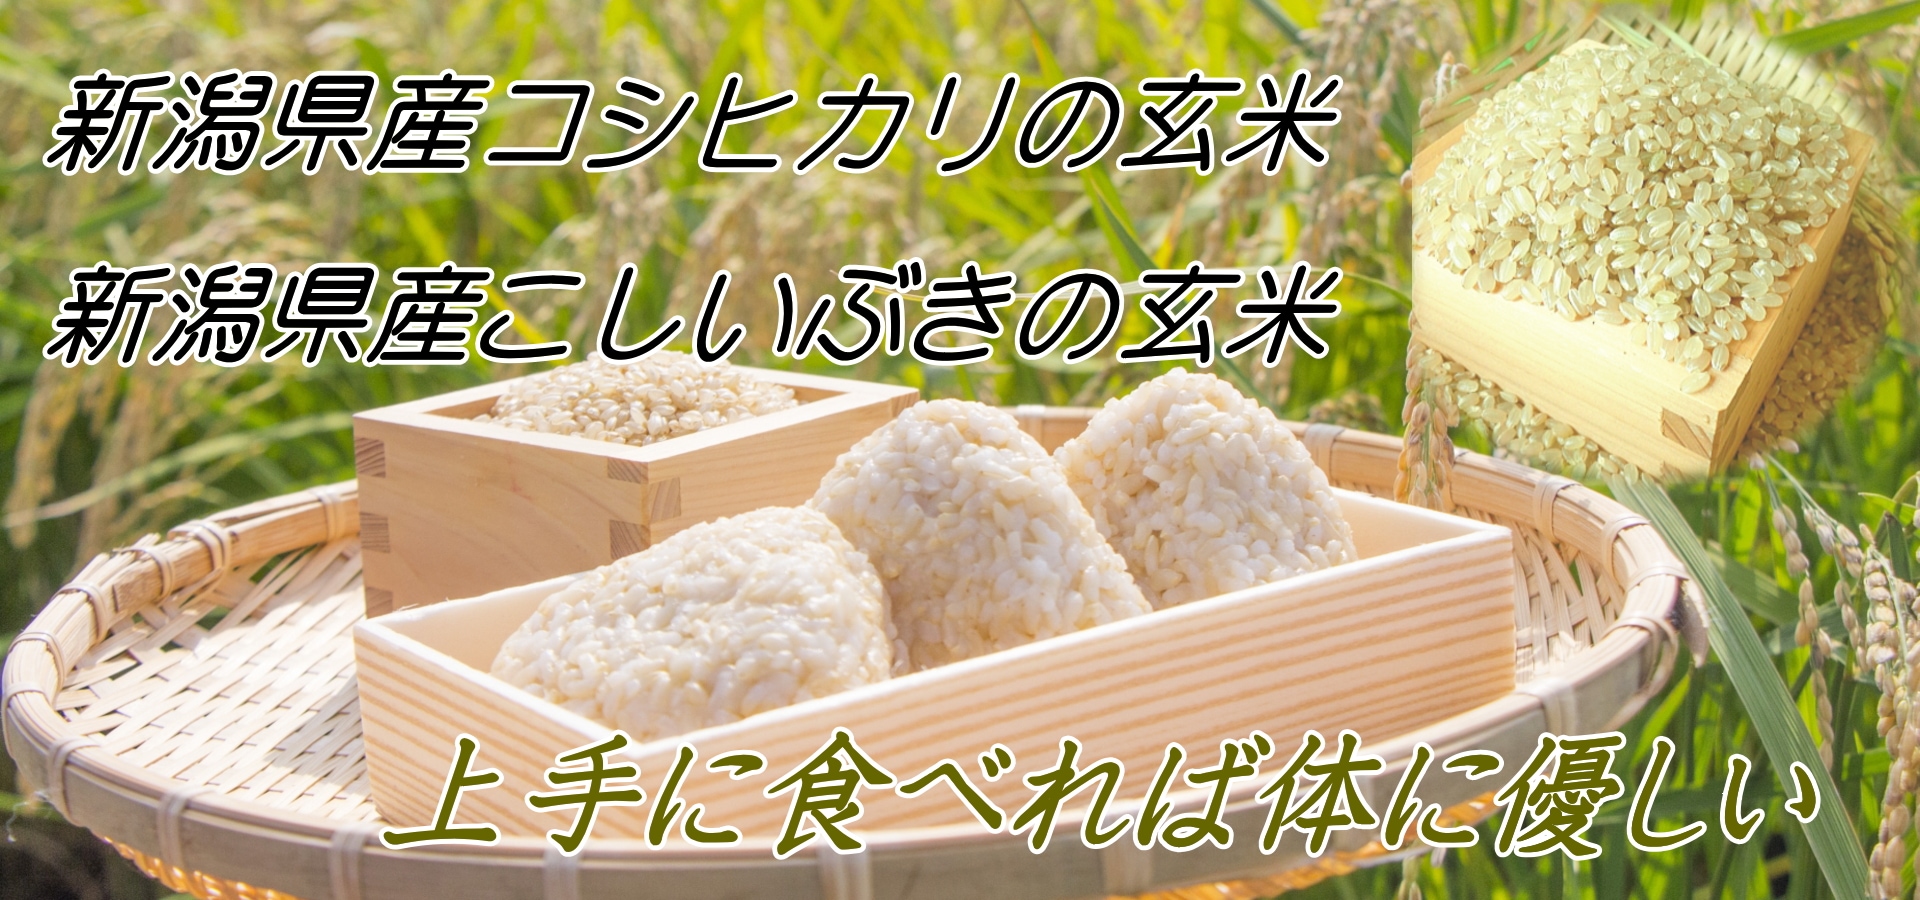 新潟県産「コシヒカリ玄米・こしいぶき玄米」